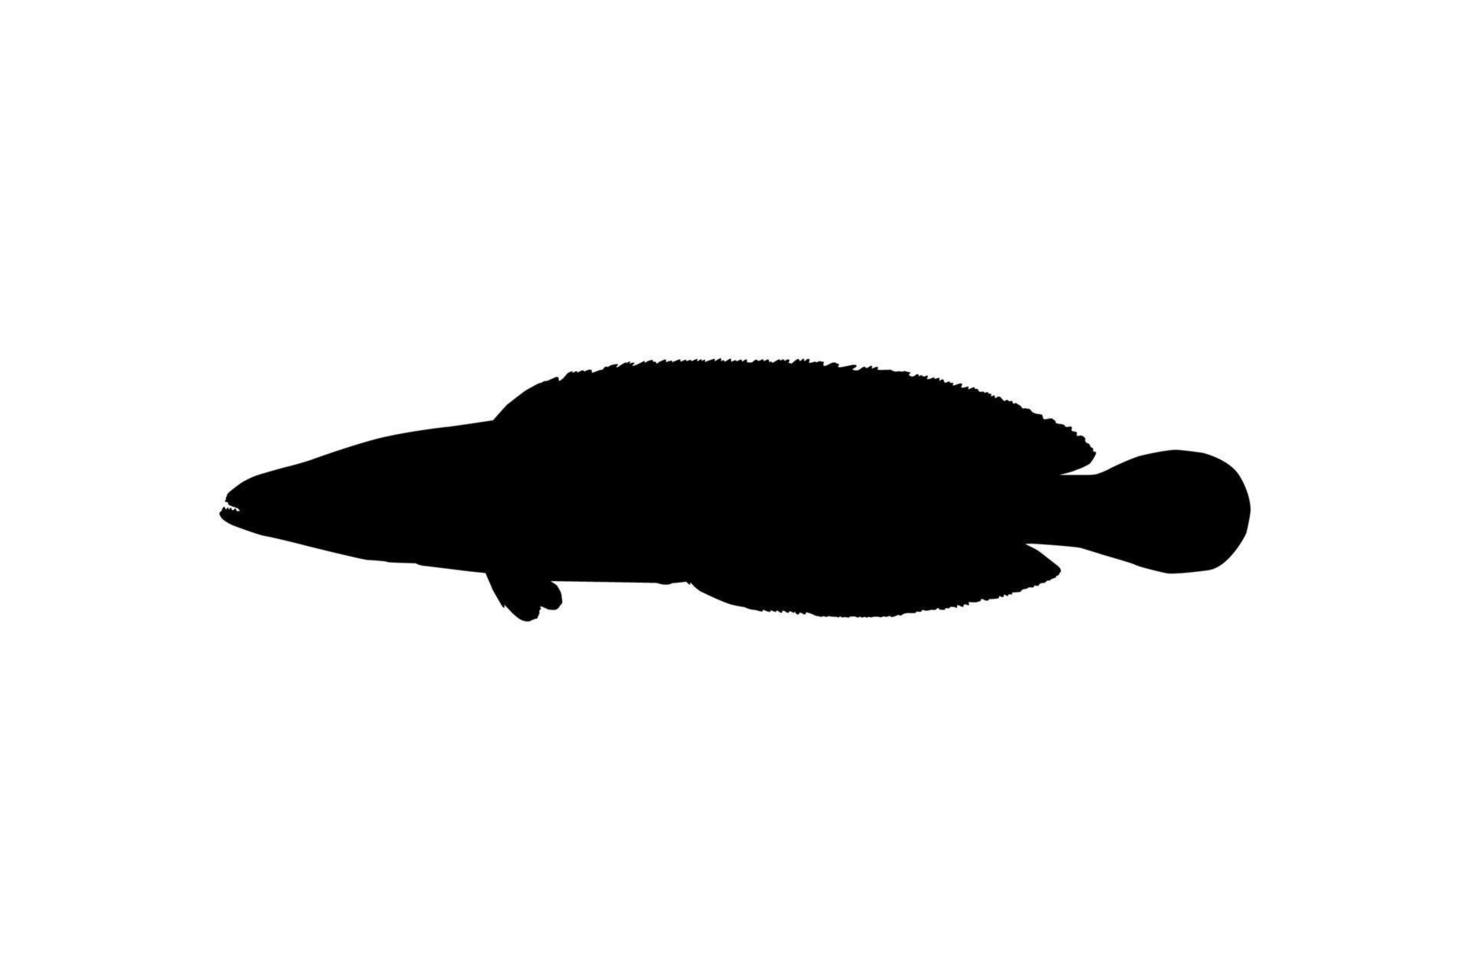 pez cabeza de serpiente, channidae de la familia de peces perciformes de agua dulce, silueta para logotipo, pictograma o elemento de diseño gráfico. ilustración vectorial vector